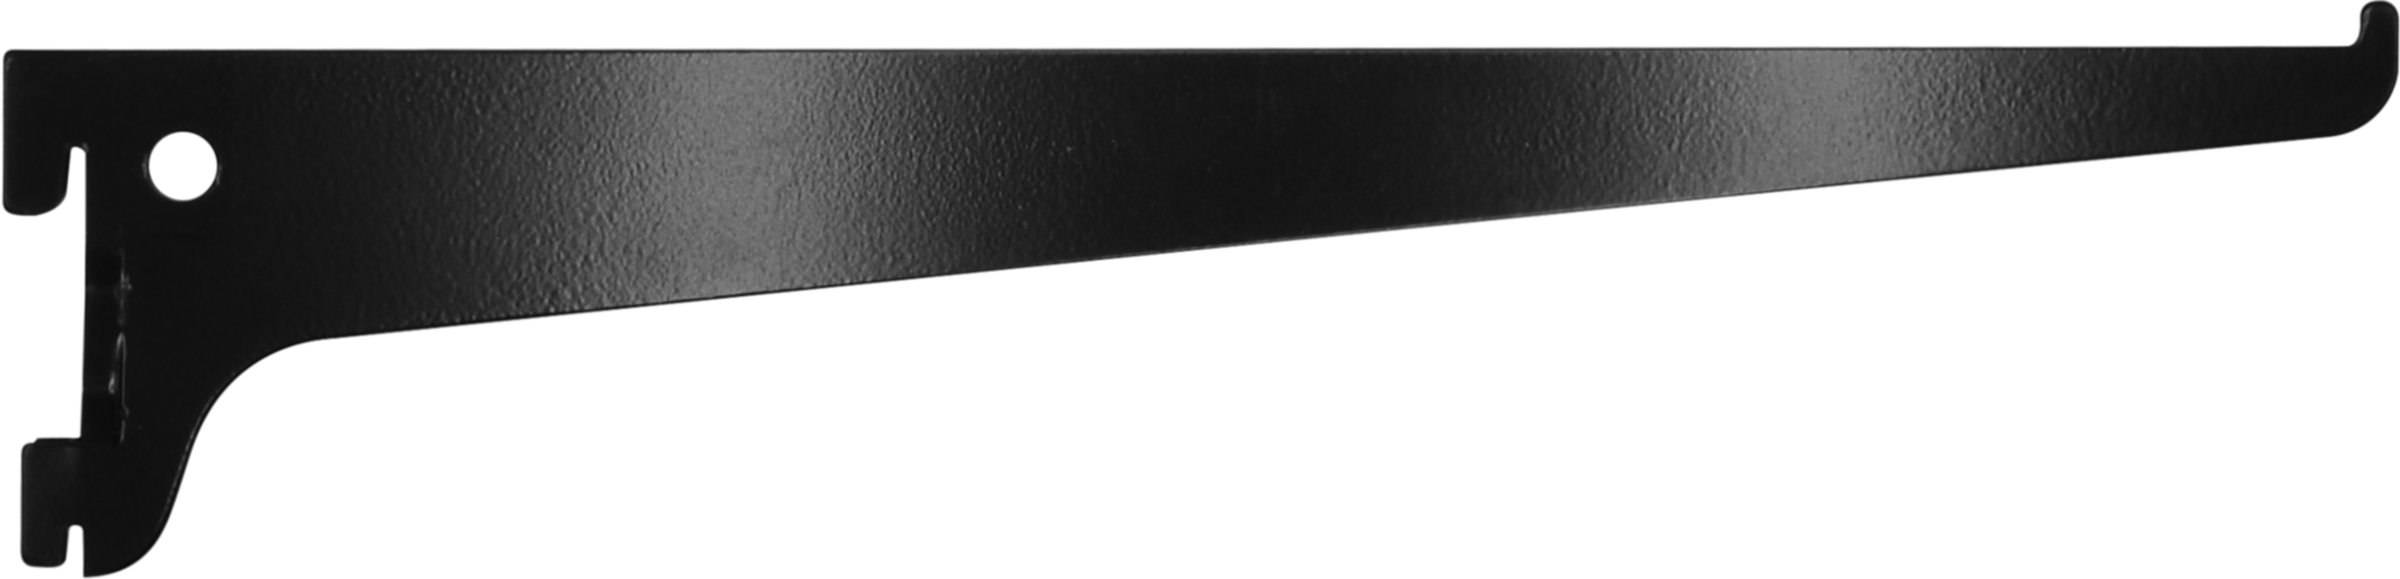 Console simple acier noir 35 cm entraxe 50 mm - CIME